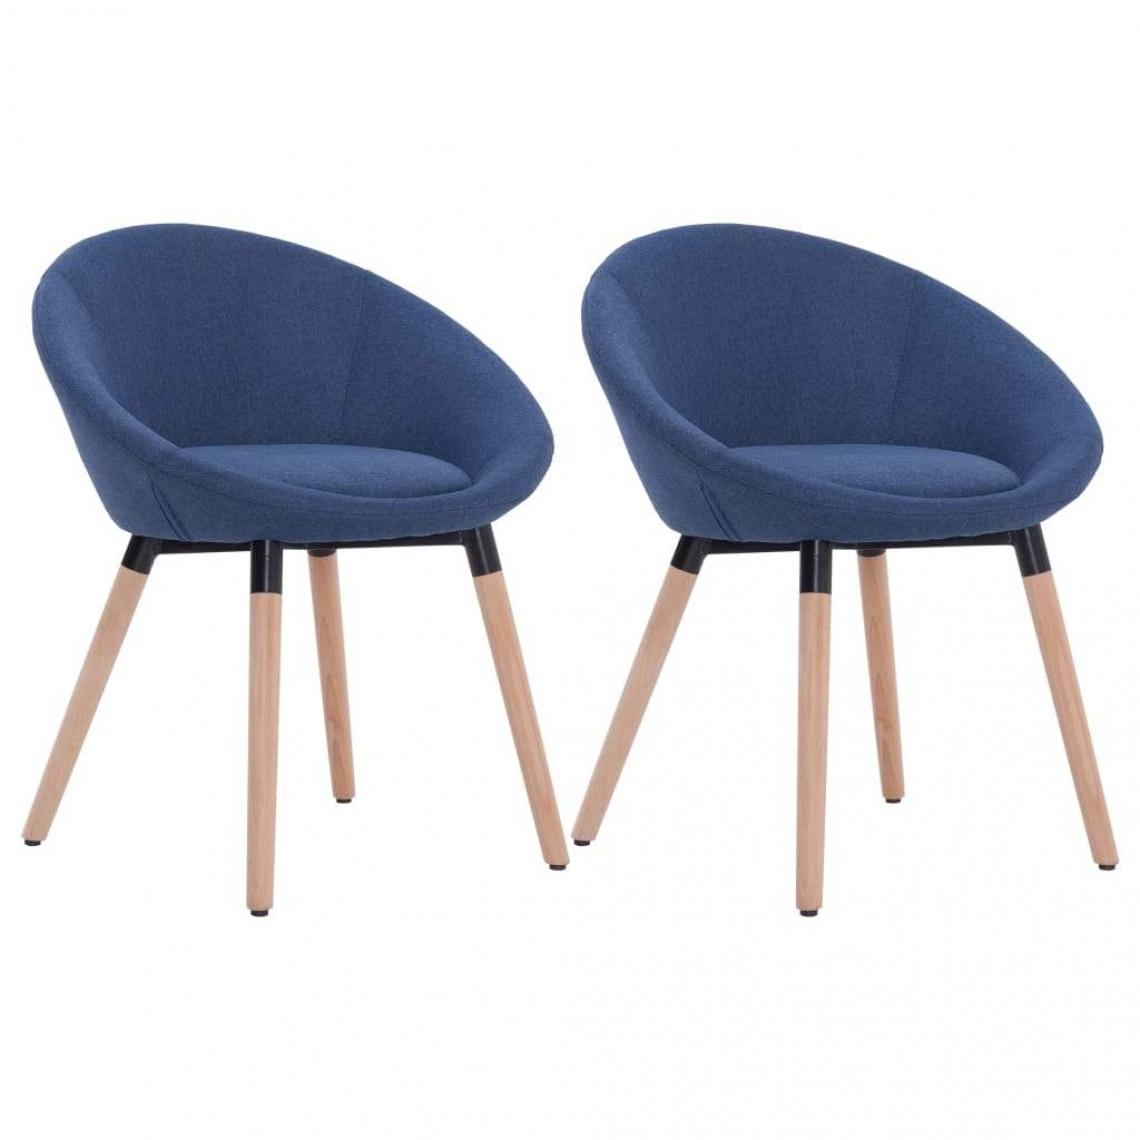 Decoshop26 - Lot de 2 chaises de salle à manger cuisine design contemporain tissu bleu CDS020230 - Chaises